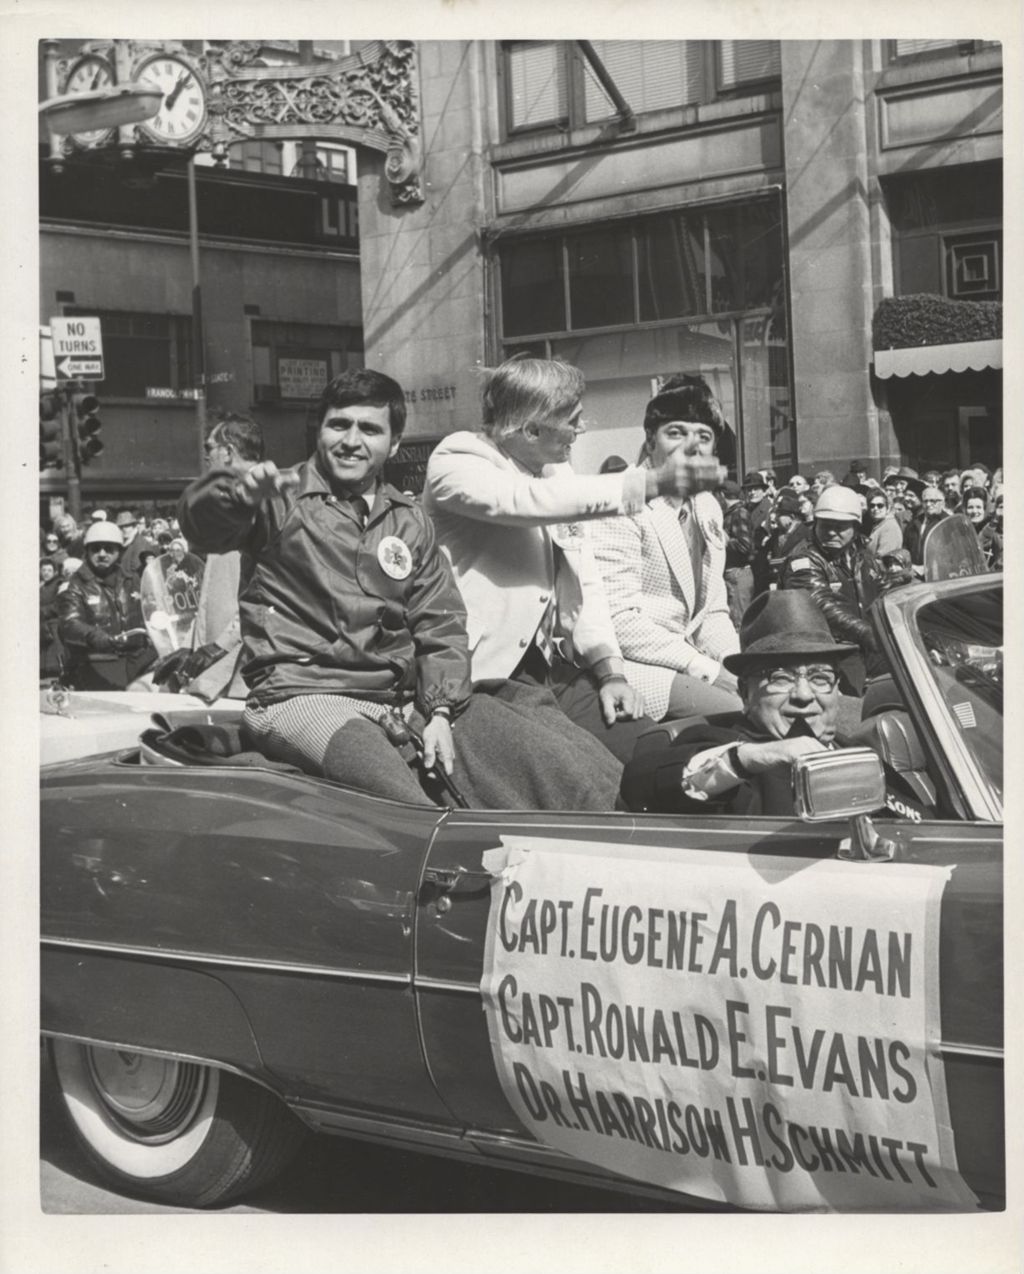 Apollo 17 astronauts Cernan, Evans, and Schmitt in Chicago parade